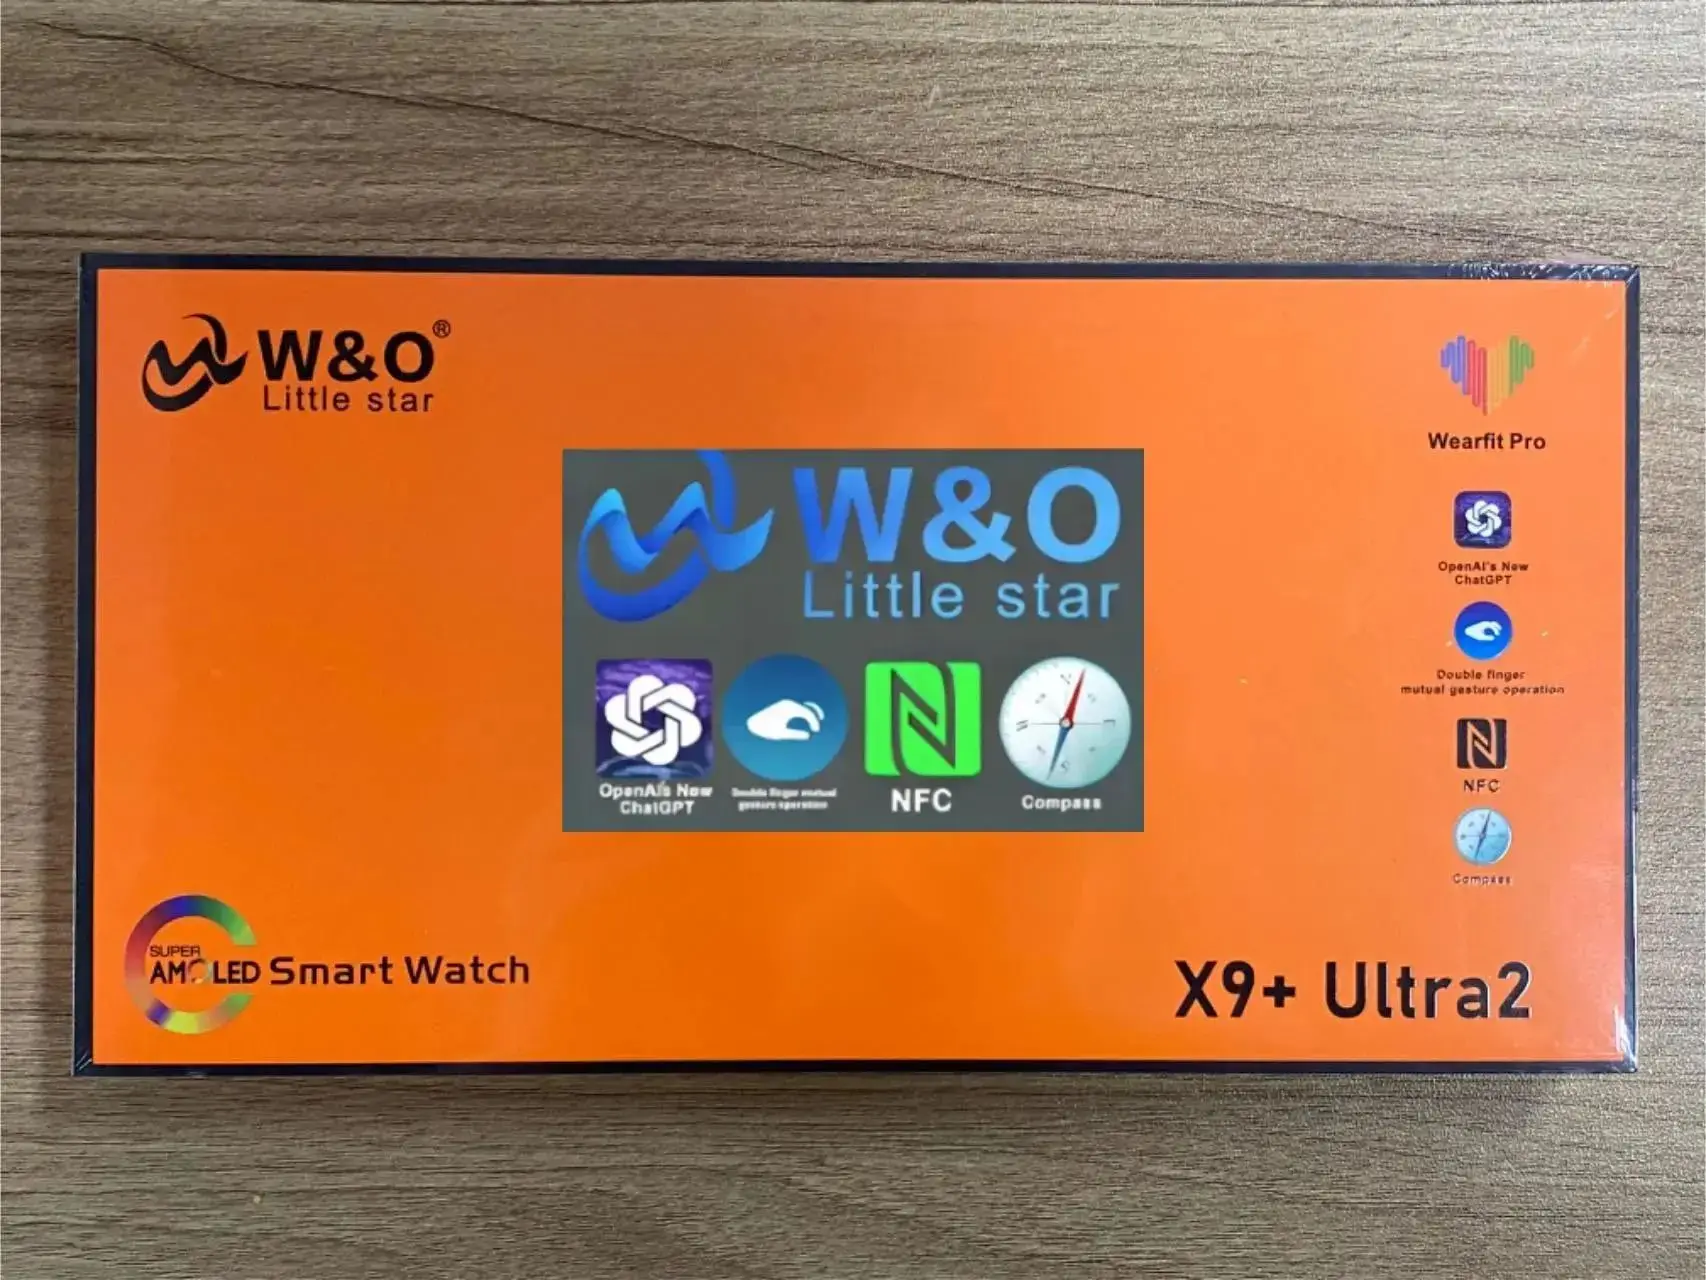 

Мужские смарт-часы W & O X9 + Ultra 2, большой размер 49 мм, 2,13 дюйма, Wearfit Pro APP, Bluetooth, функция звонков, Bluetooth, функция общения, компас, спортивные Смарт-часы